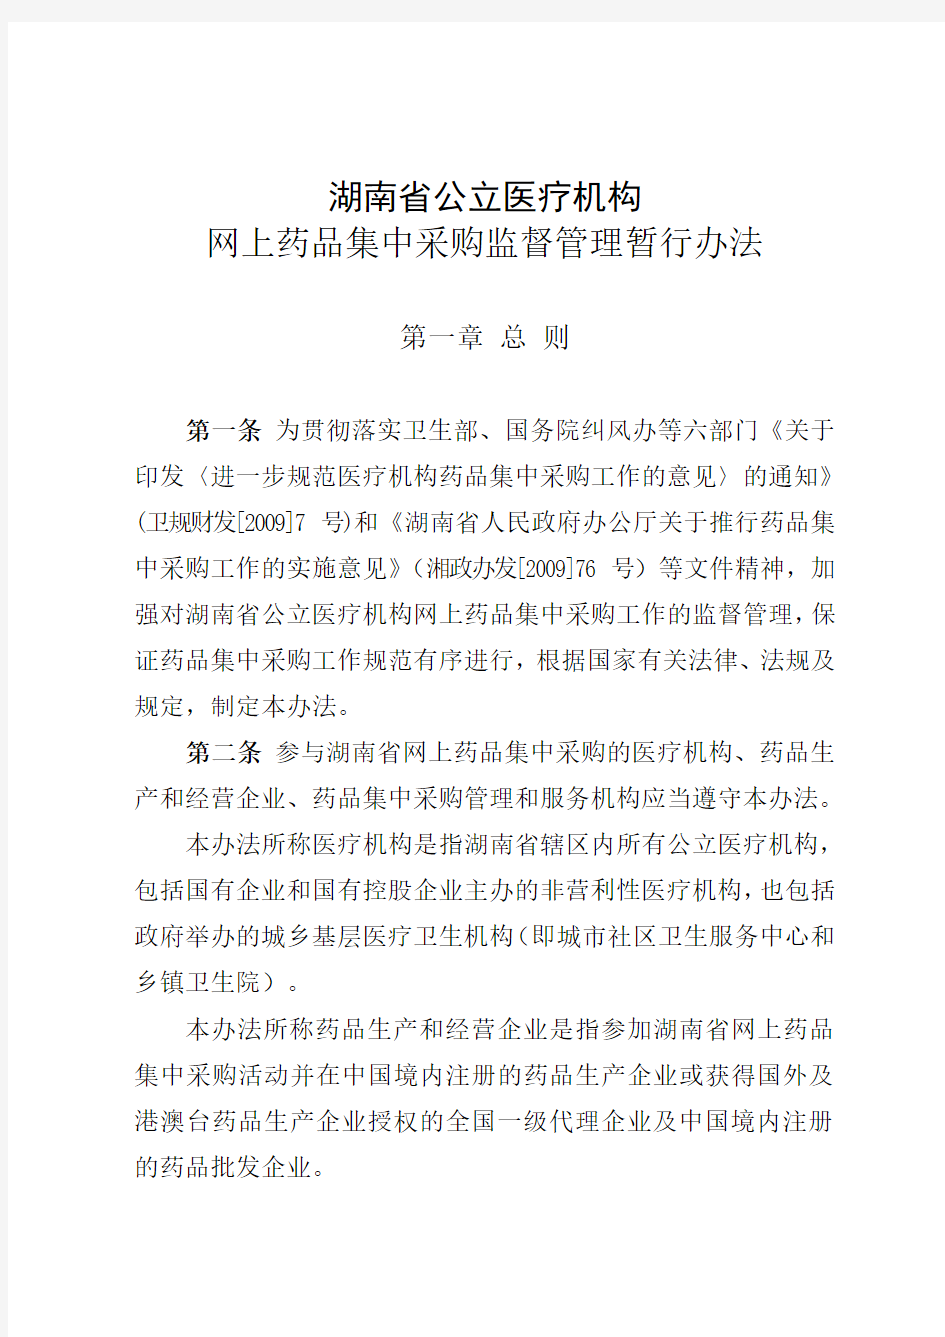 湖南省公立医疗机构网上药品集中采购监督管理暂行办法